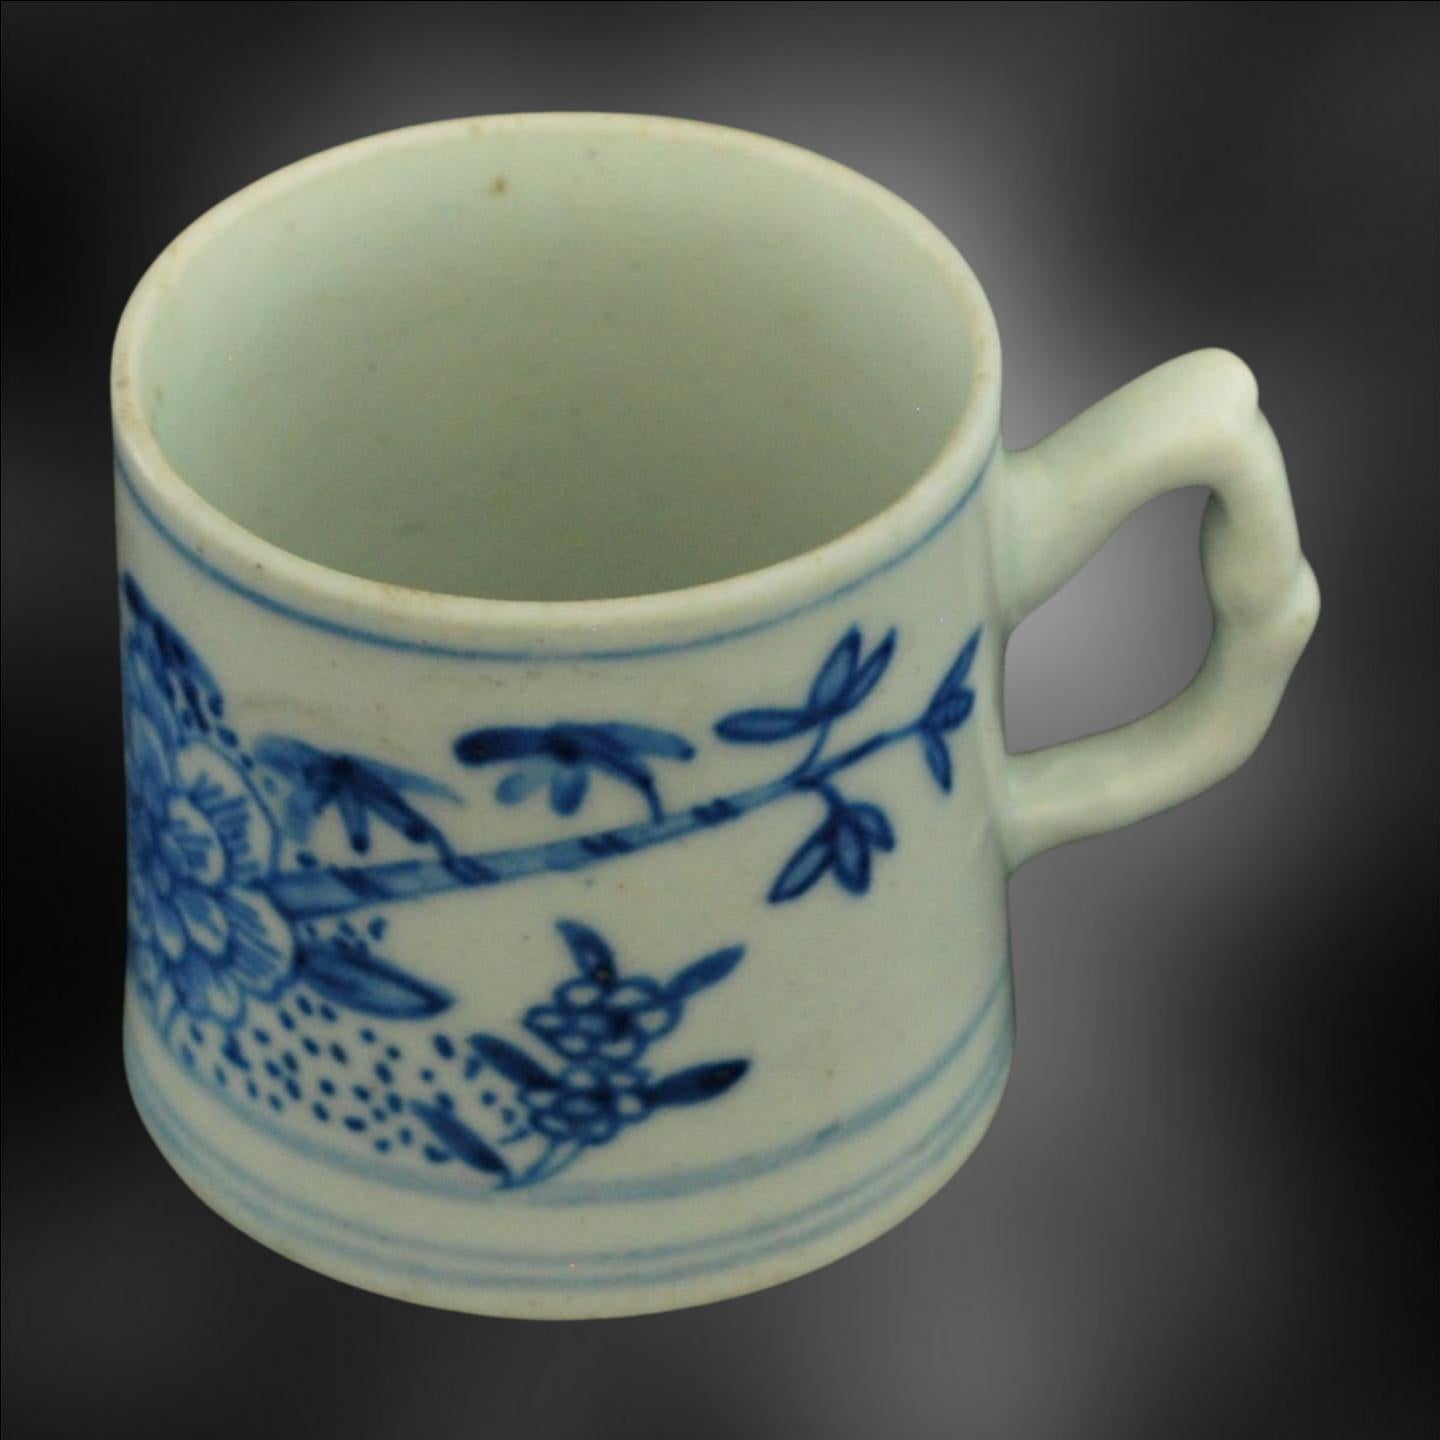 Une première boîte à café, peinte en bleu sous glaçure avec des pivoines et des bambous. La peinture est liée à la cruche de William Pether de 1754.

La décoration est directement tirée d'exemples chinois et était destinée à concurrencer les